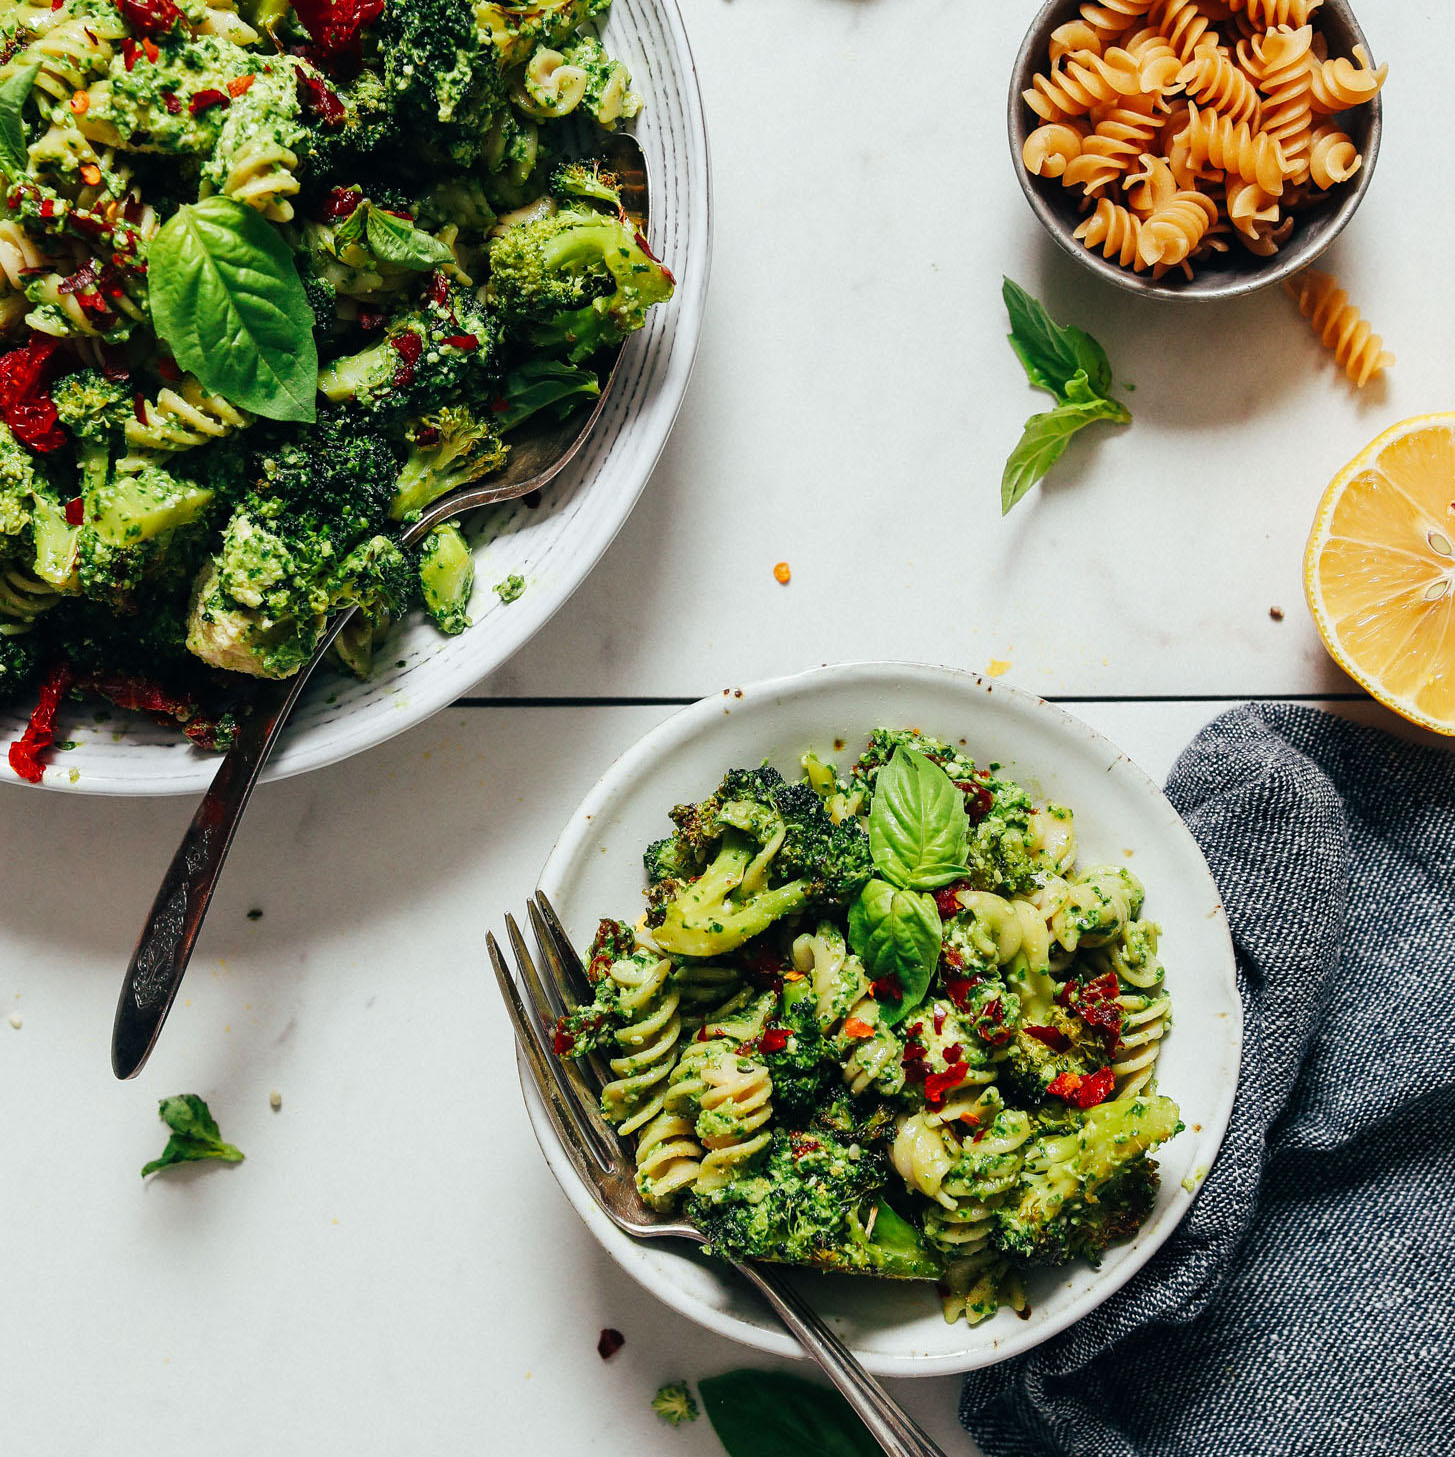 Glutensiz makarna ile yapılan Brokoli Pesto Makarna Salatası kaseleri